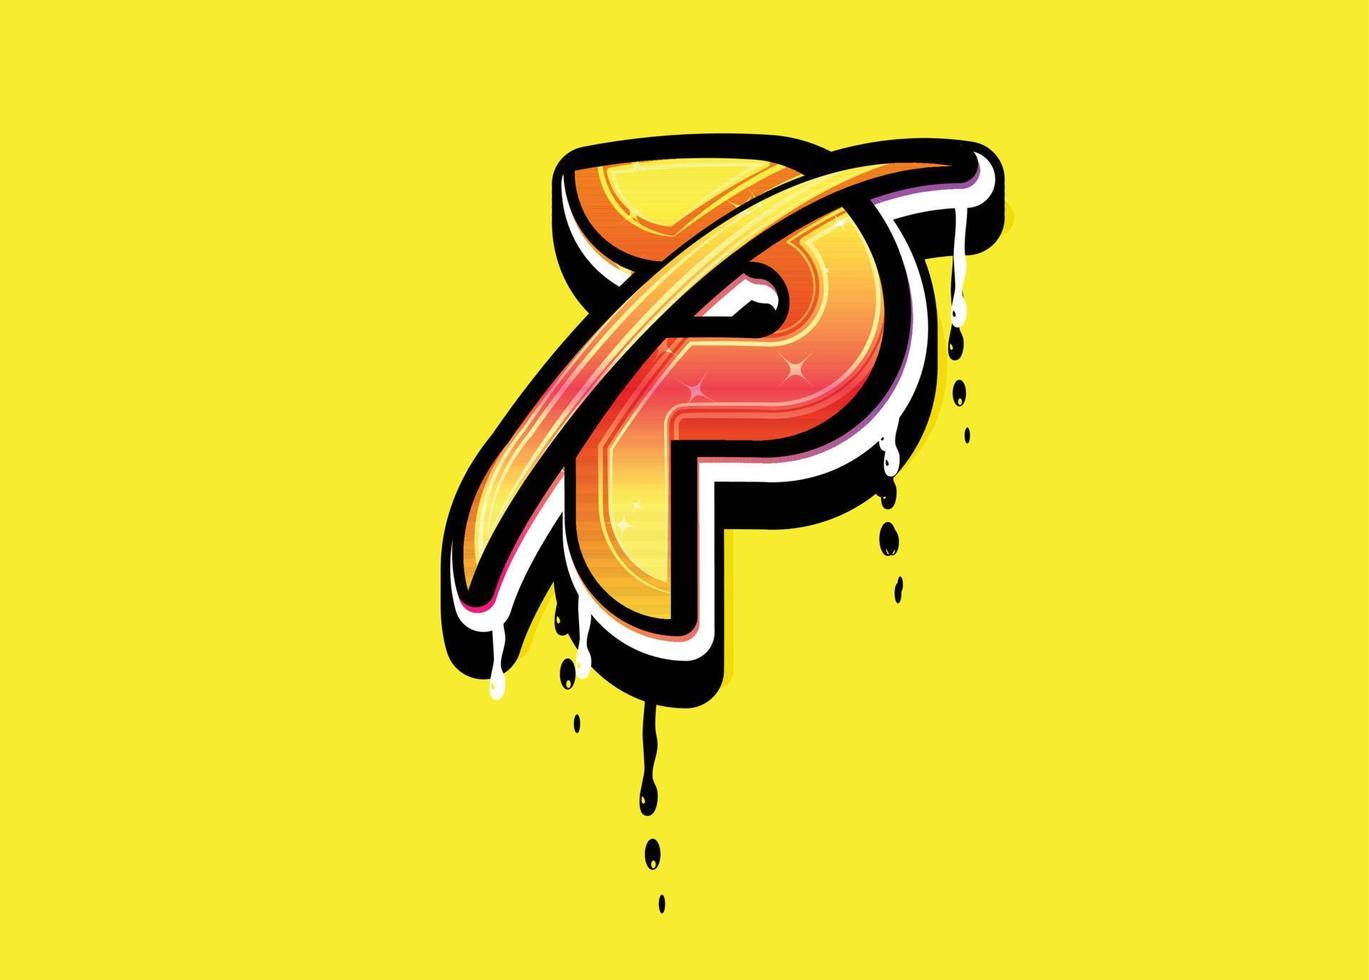 p letra swoosh vector logo